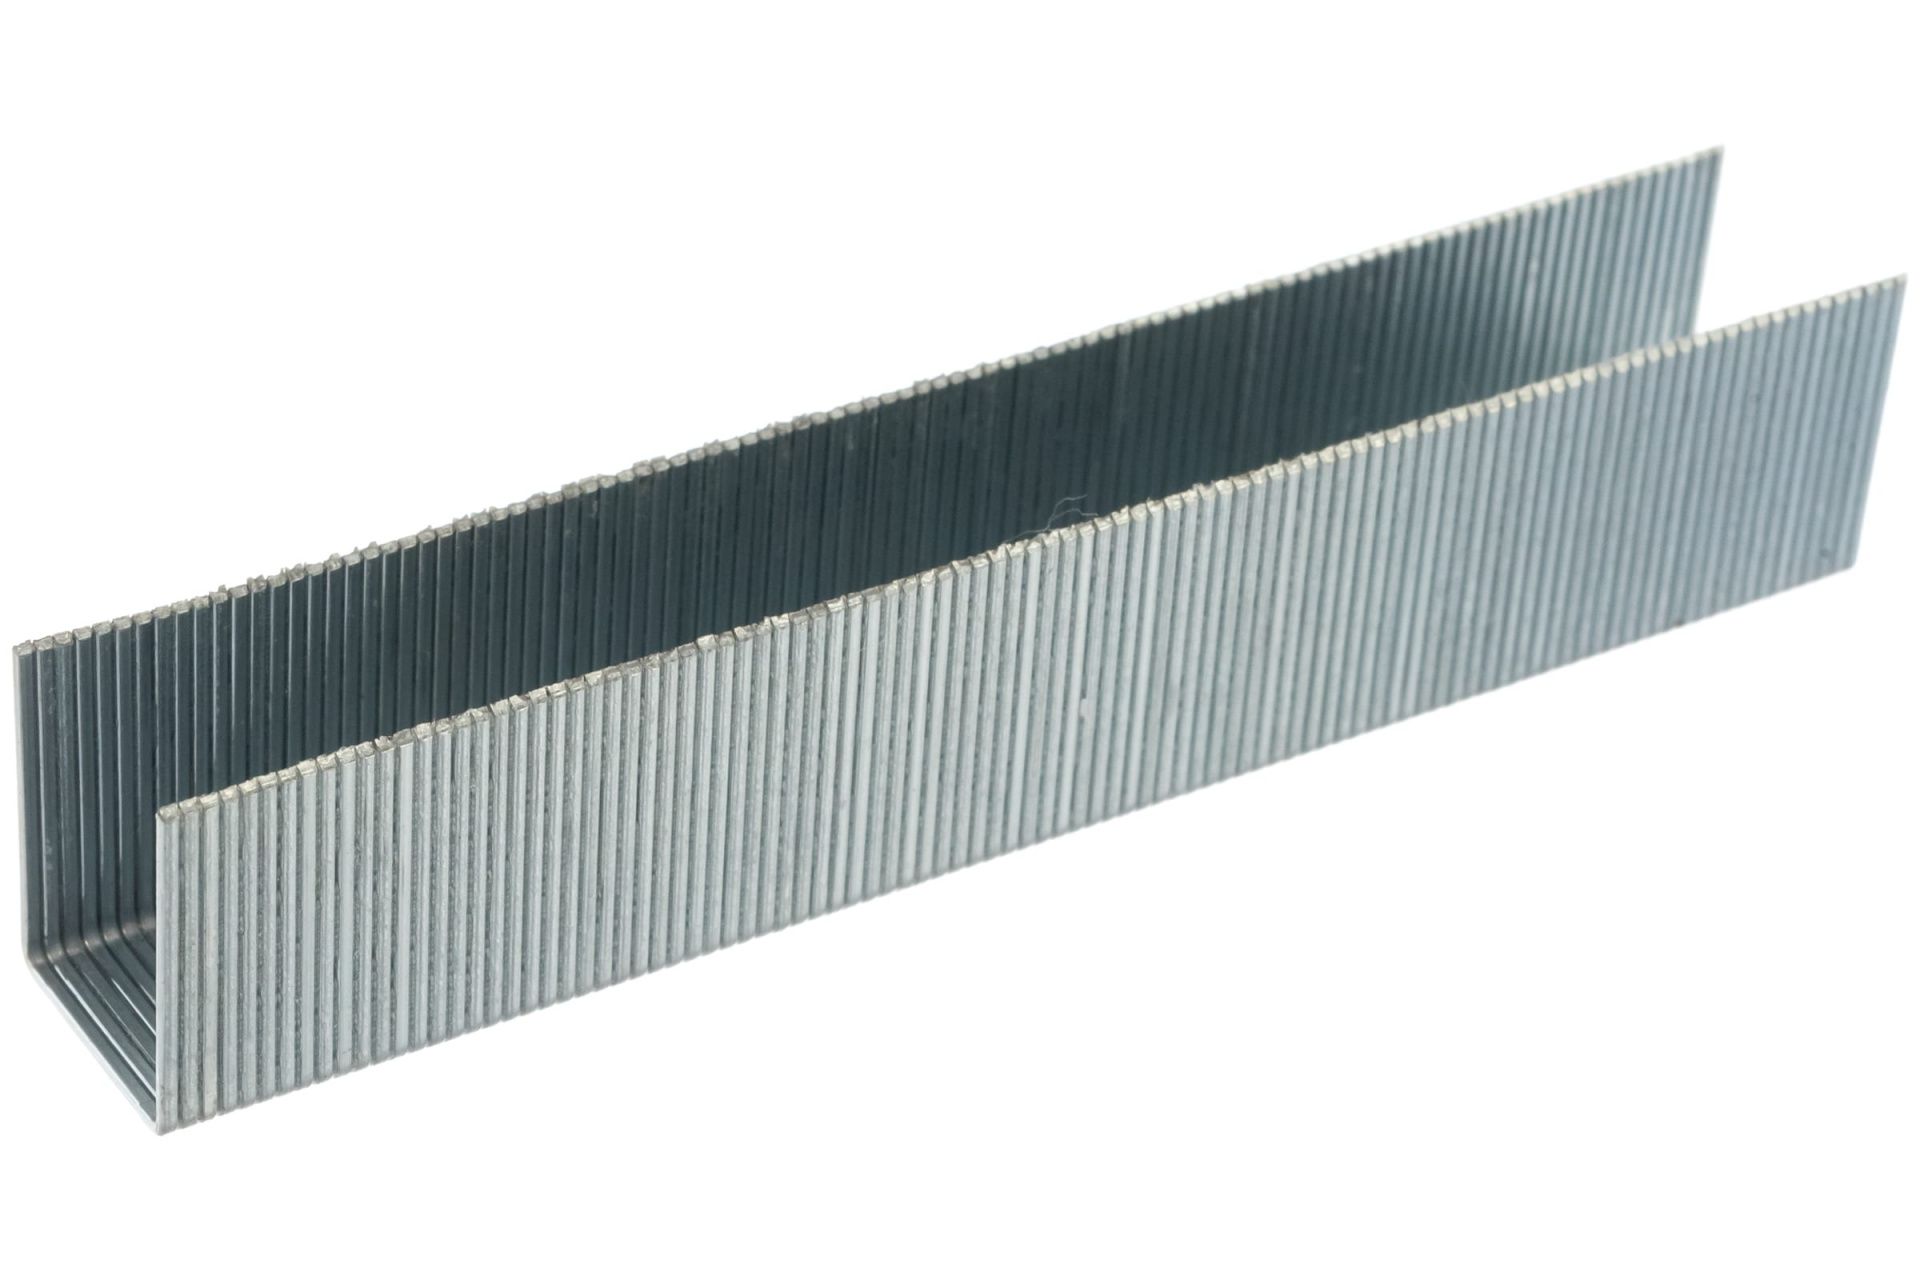 Скобы для степлера 10 мм, Тип 53, толщина 0,74 мм, ширина 11,4 мм, (1000 шт) коробка серия Эксперт